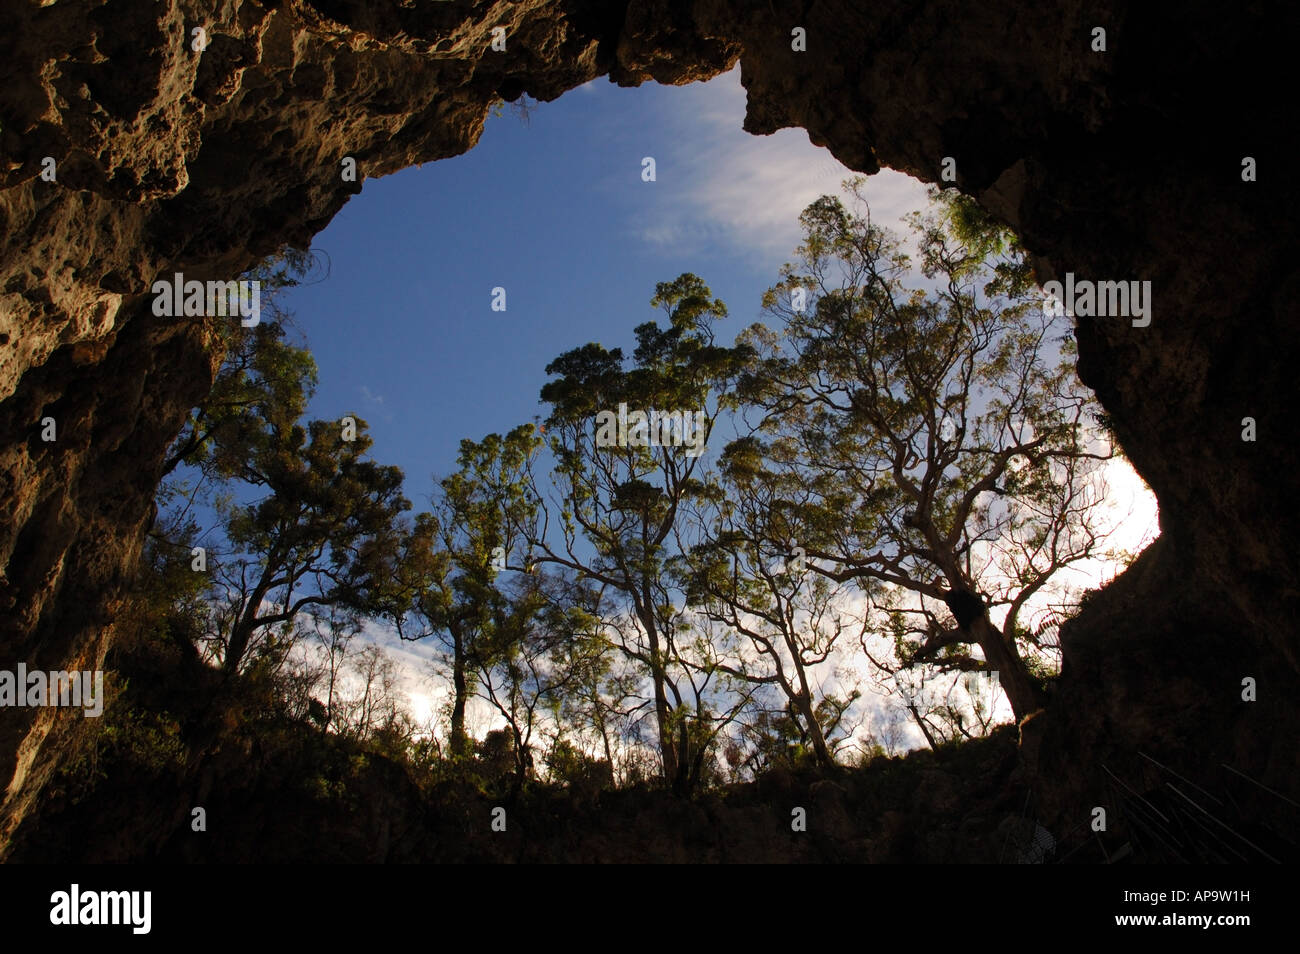 Résultat de recherche d'images pour "mammoth cave australia"